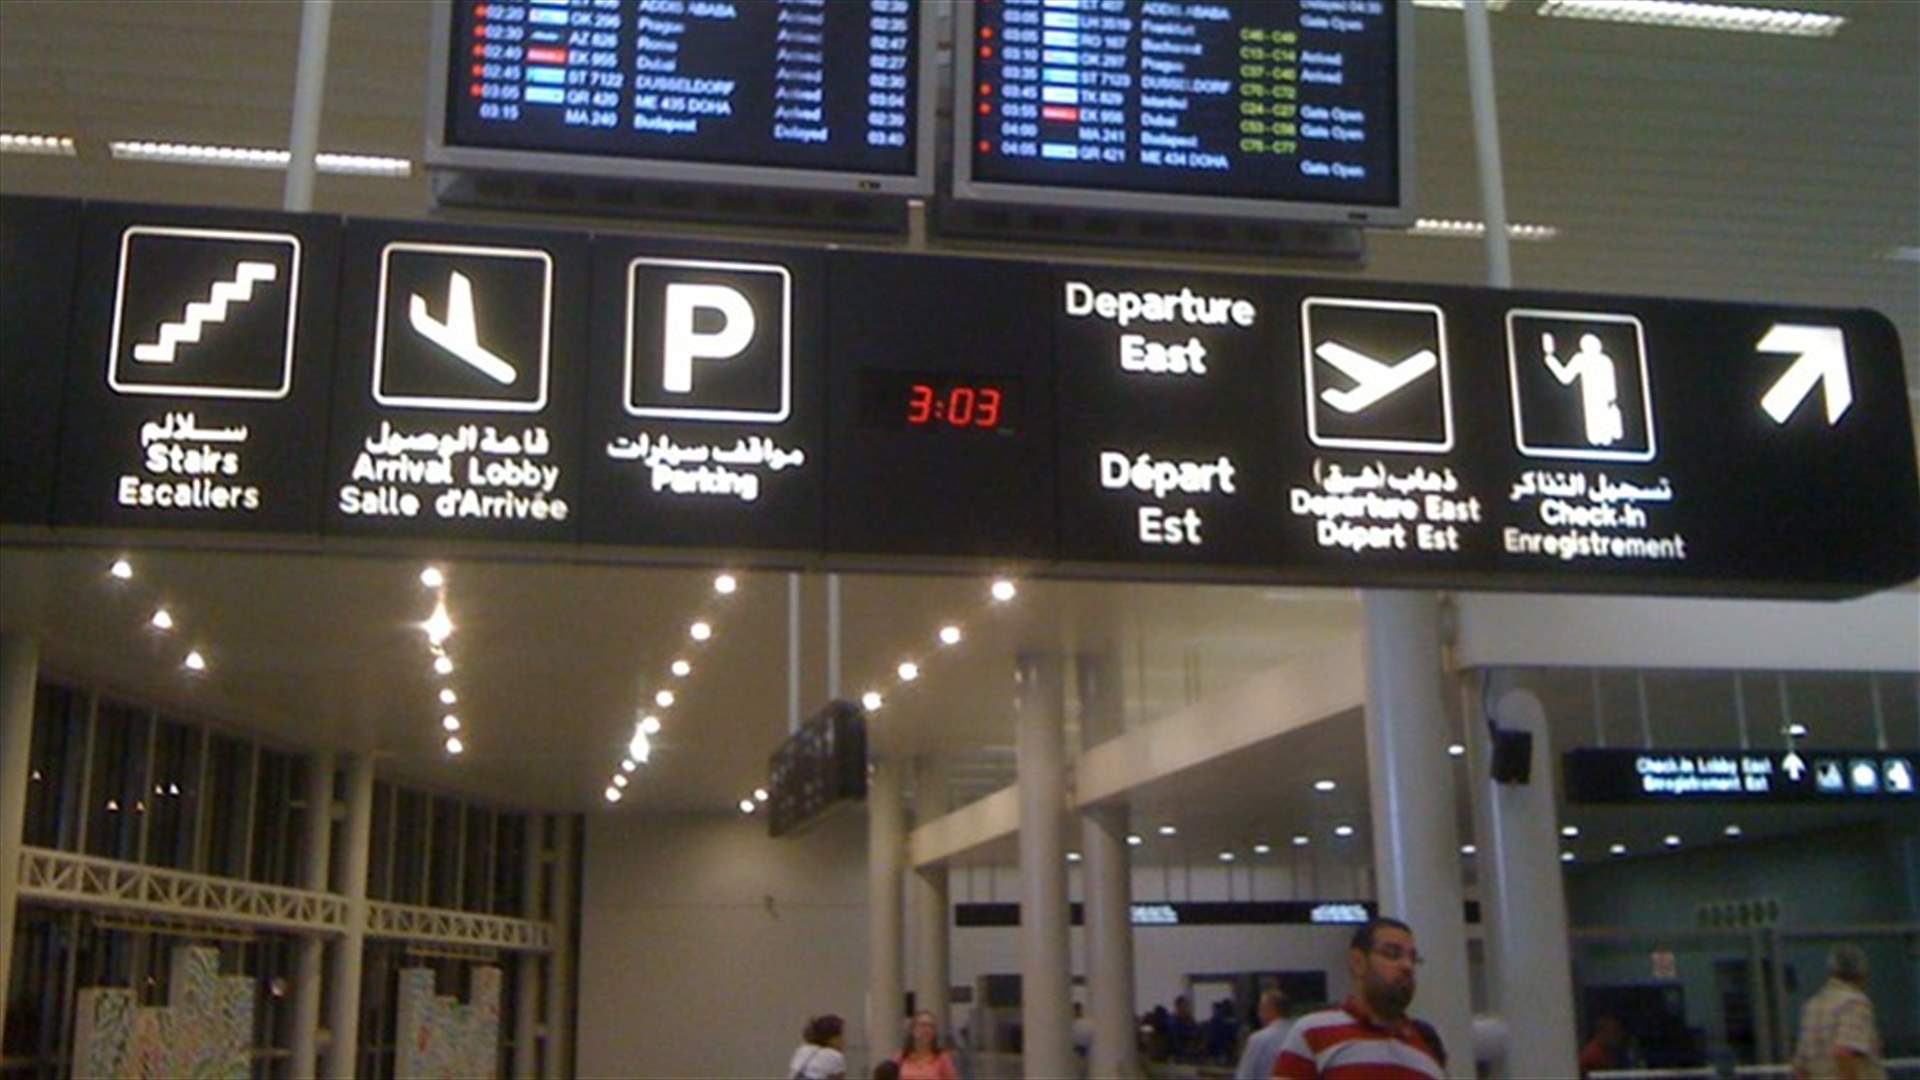 حظر نزول اي لبناني ضمن طواقم شركات طيران اجنبية في مطارات فلسطين المحتلة